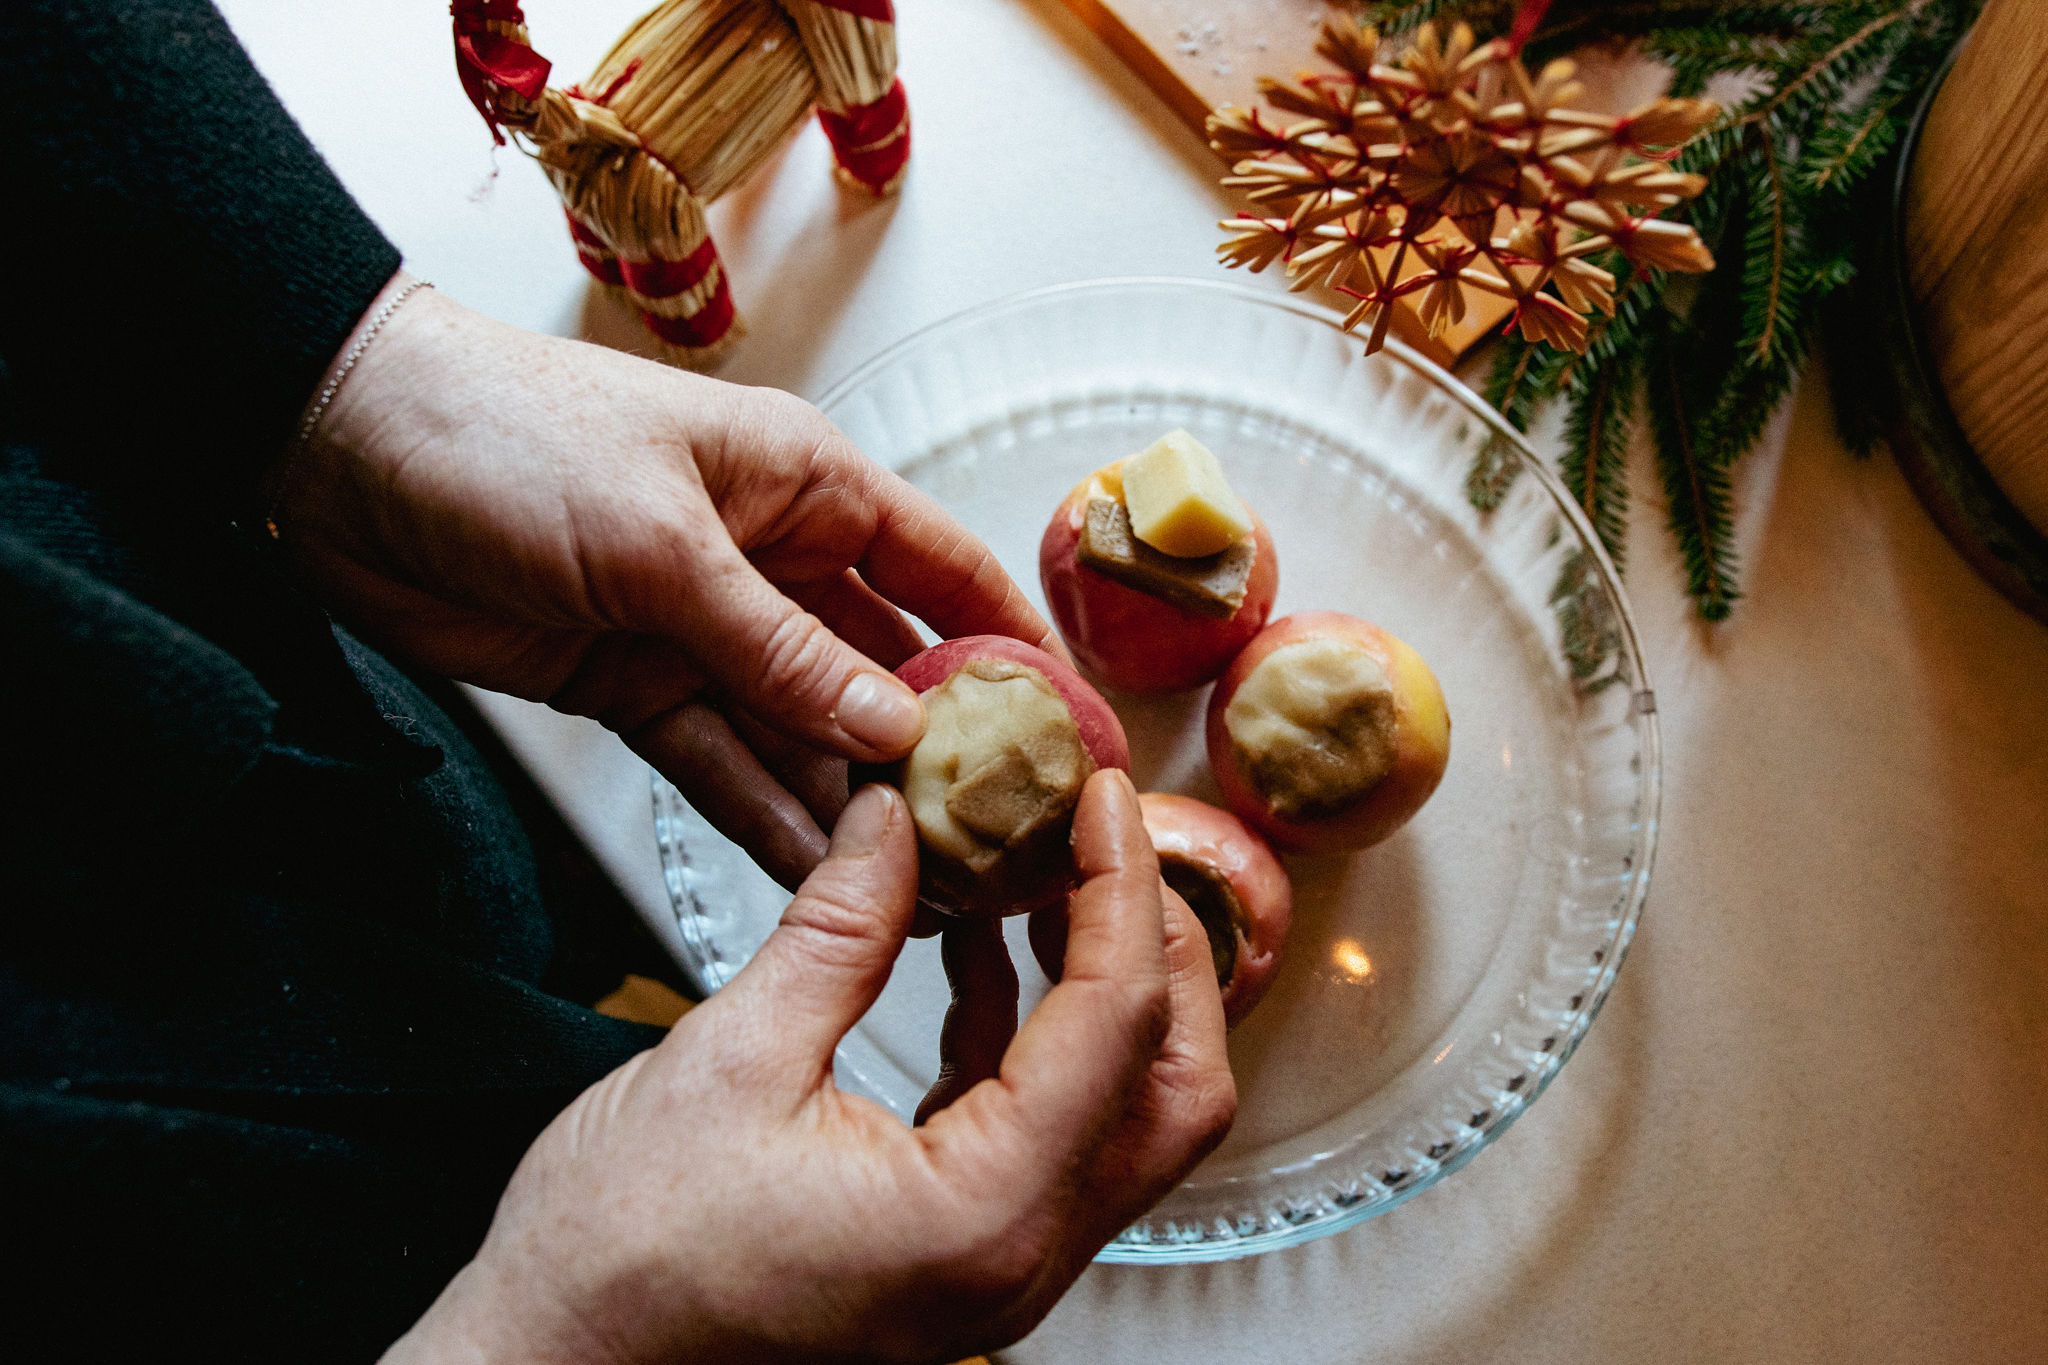 Stiina making saimaalife simple Christmas apple dessert